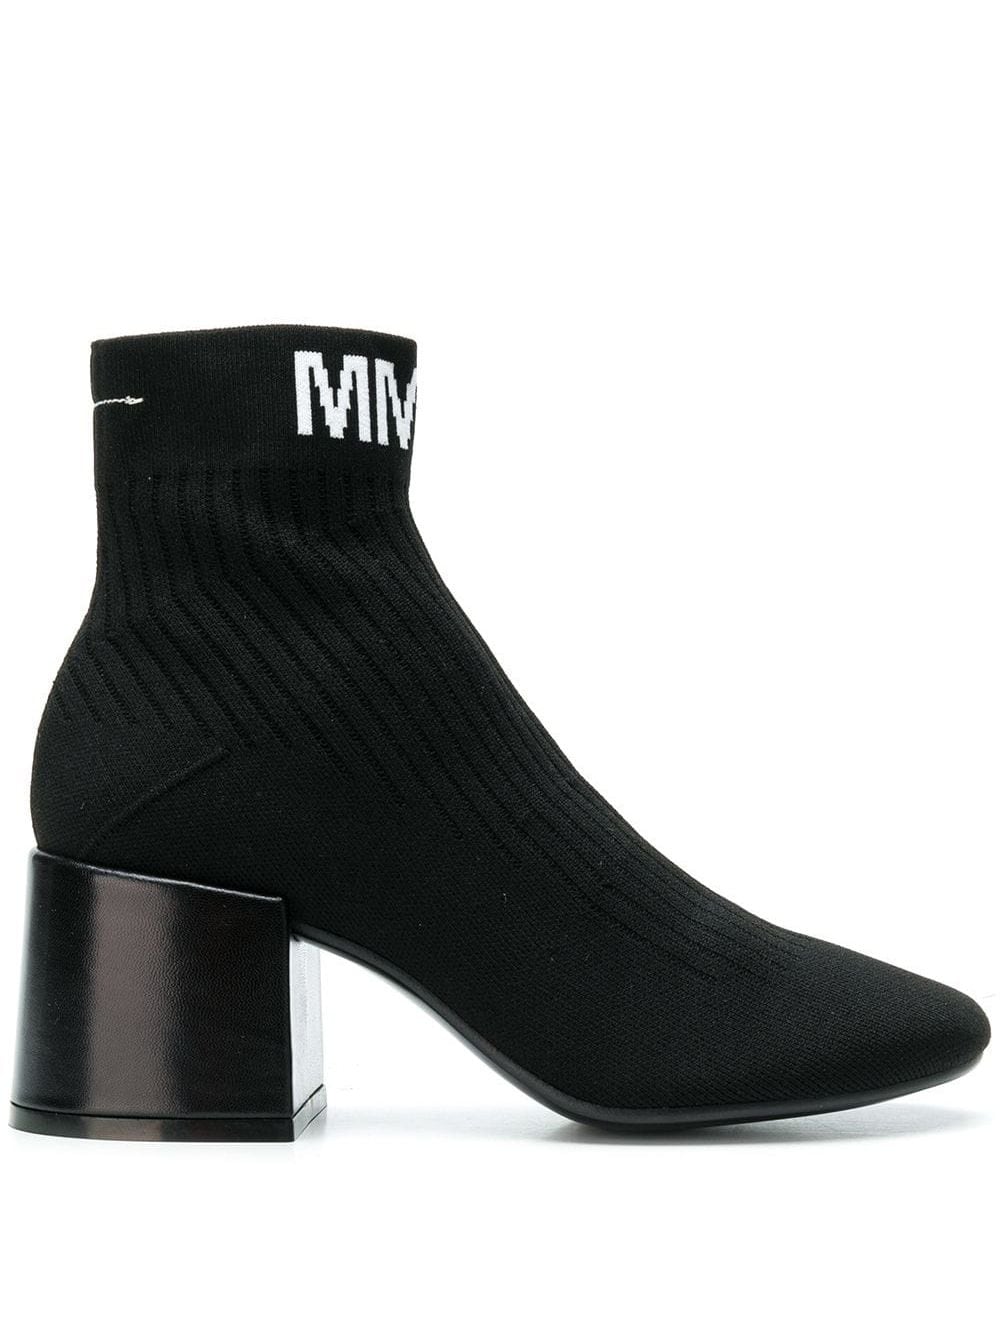 日本で買MM6 Maison Margiela ロゴソックスブーツ 靴